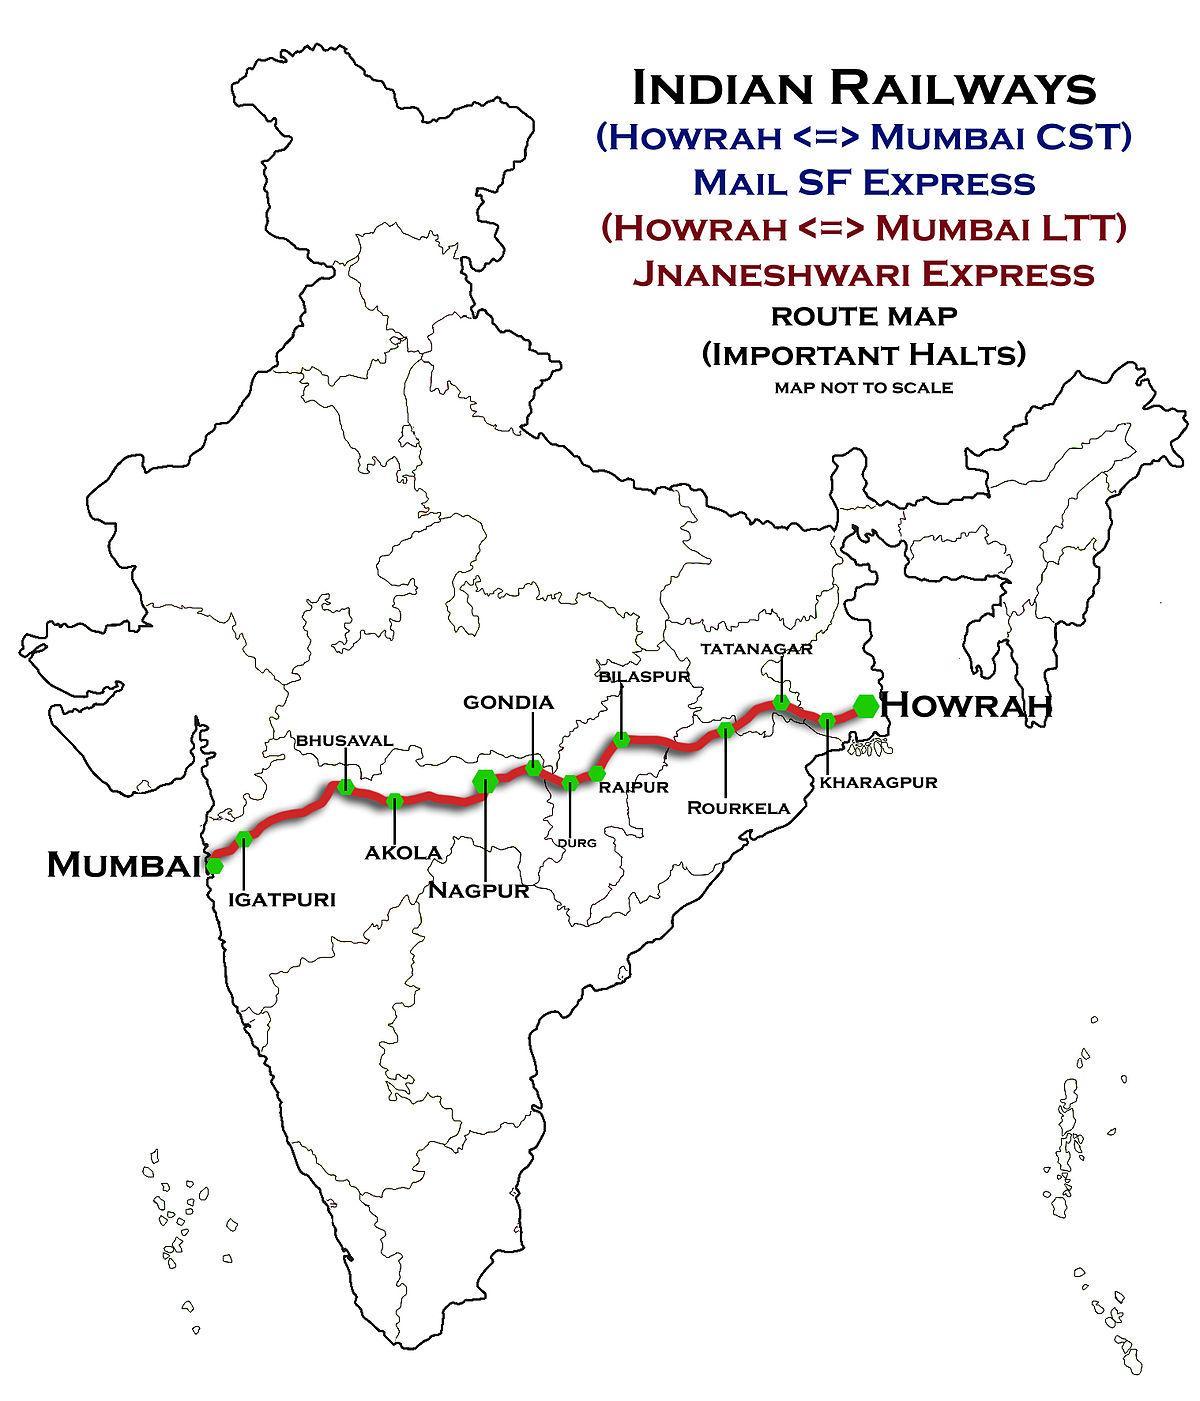 નાગપુર-મુંબઇ એક્સપ્રેસ હાઇવે નકશો